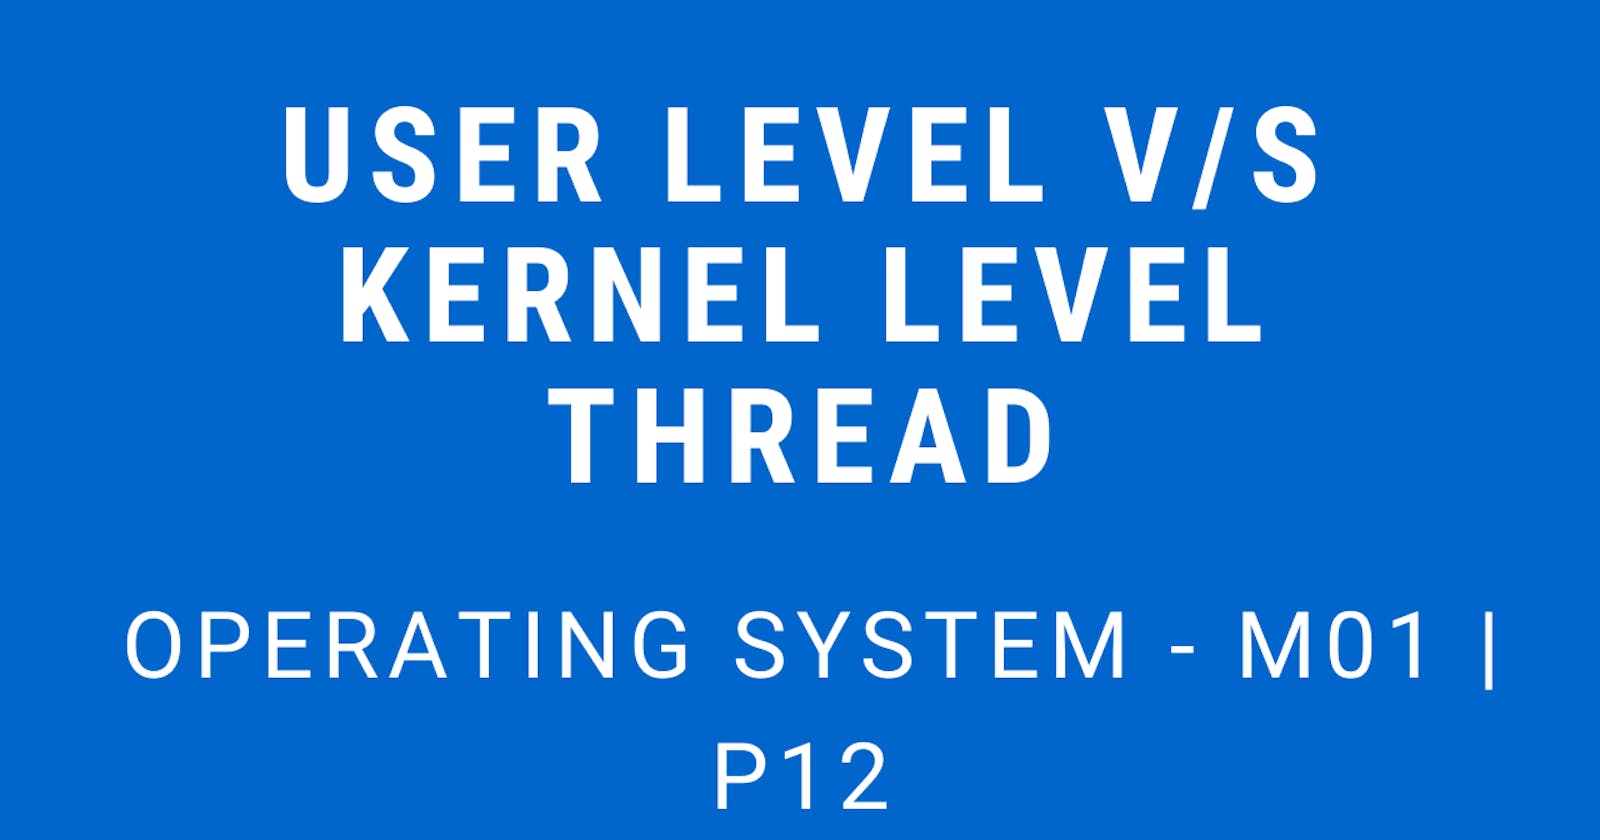 User Level v/s Kernel Level Threads | Operating System - M01 P12